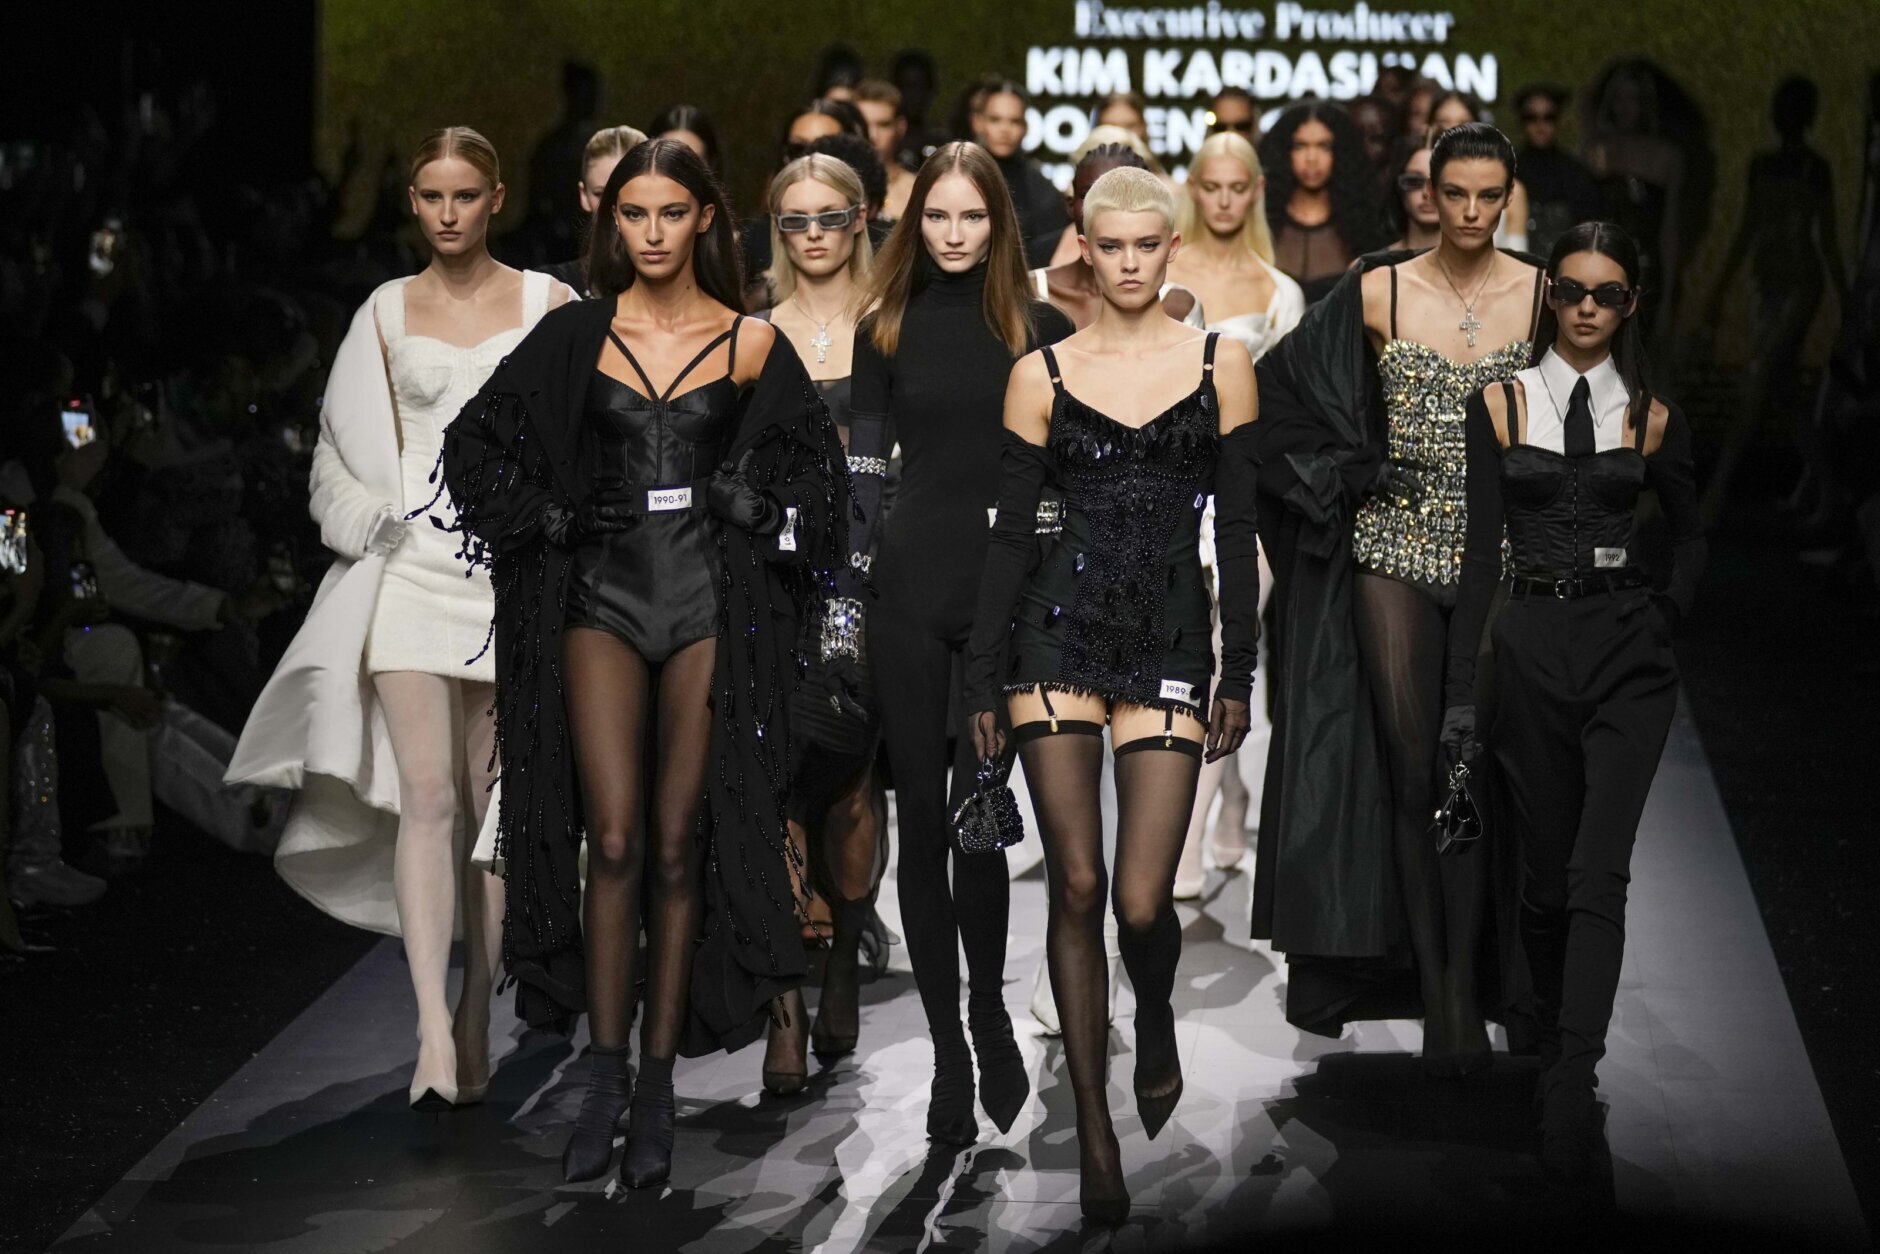 Kim Kardashian Wear 4 Skintight Dolce & Gabbana Outfits in 1 Day